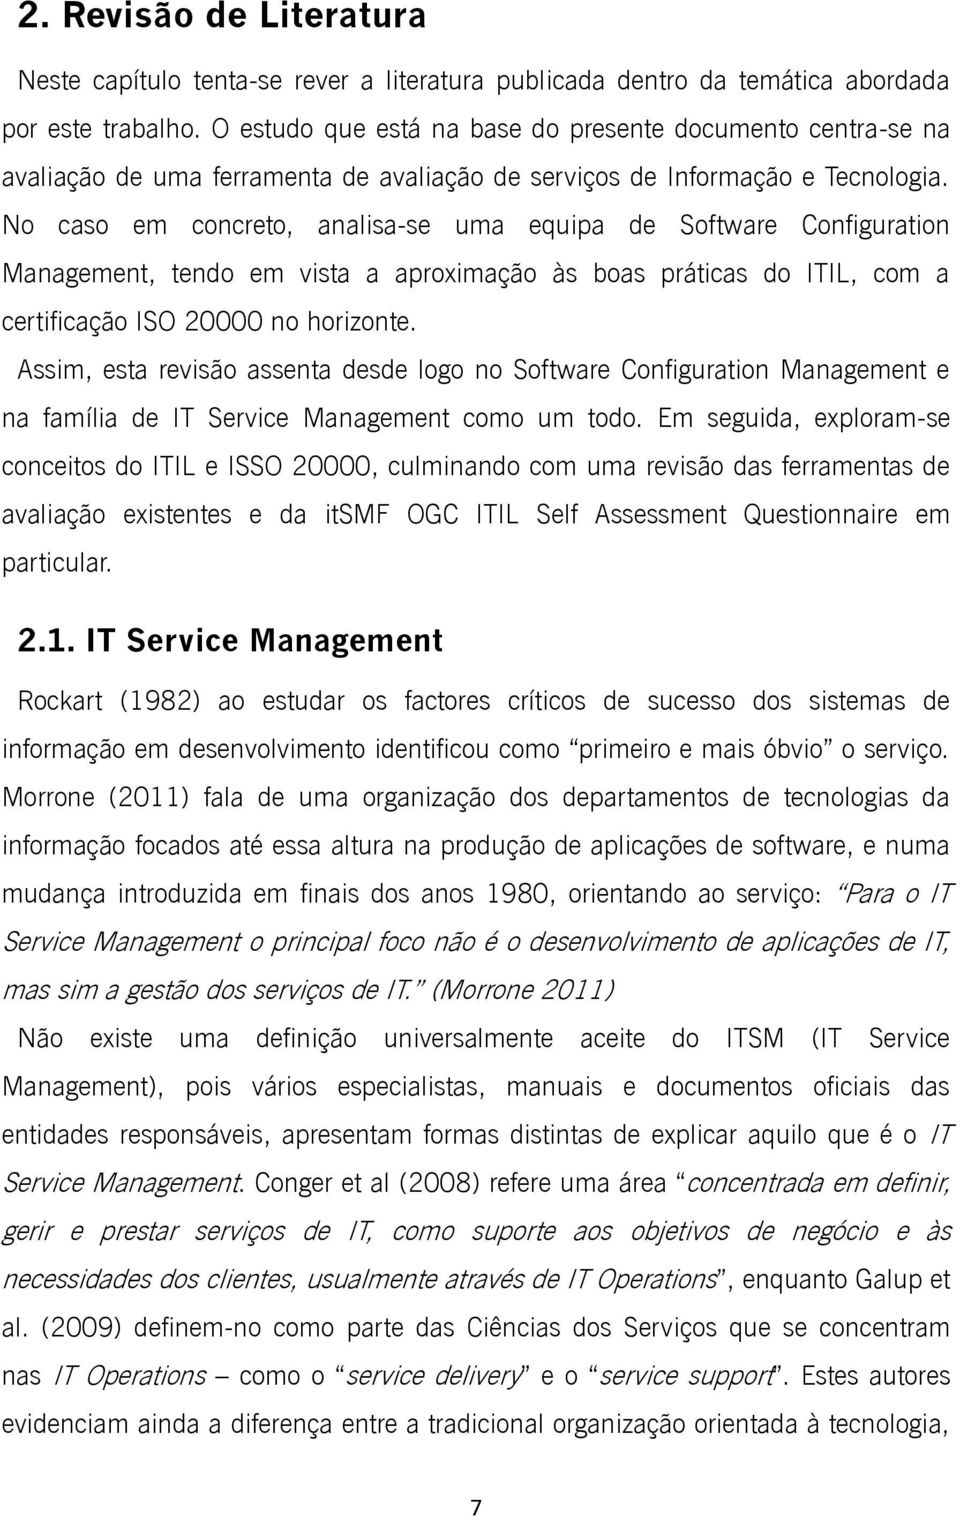 No caso em concreto, analisa-se uma equipa de Software Configuration Management, tendo em vista a aproximação às boas práticas do ITIL, com a certificação ISO 20000 no horizonte.